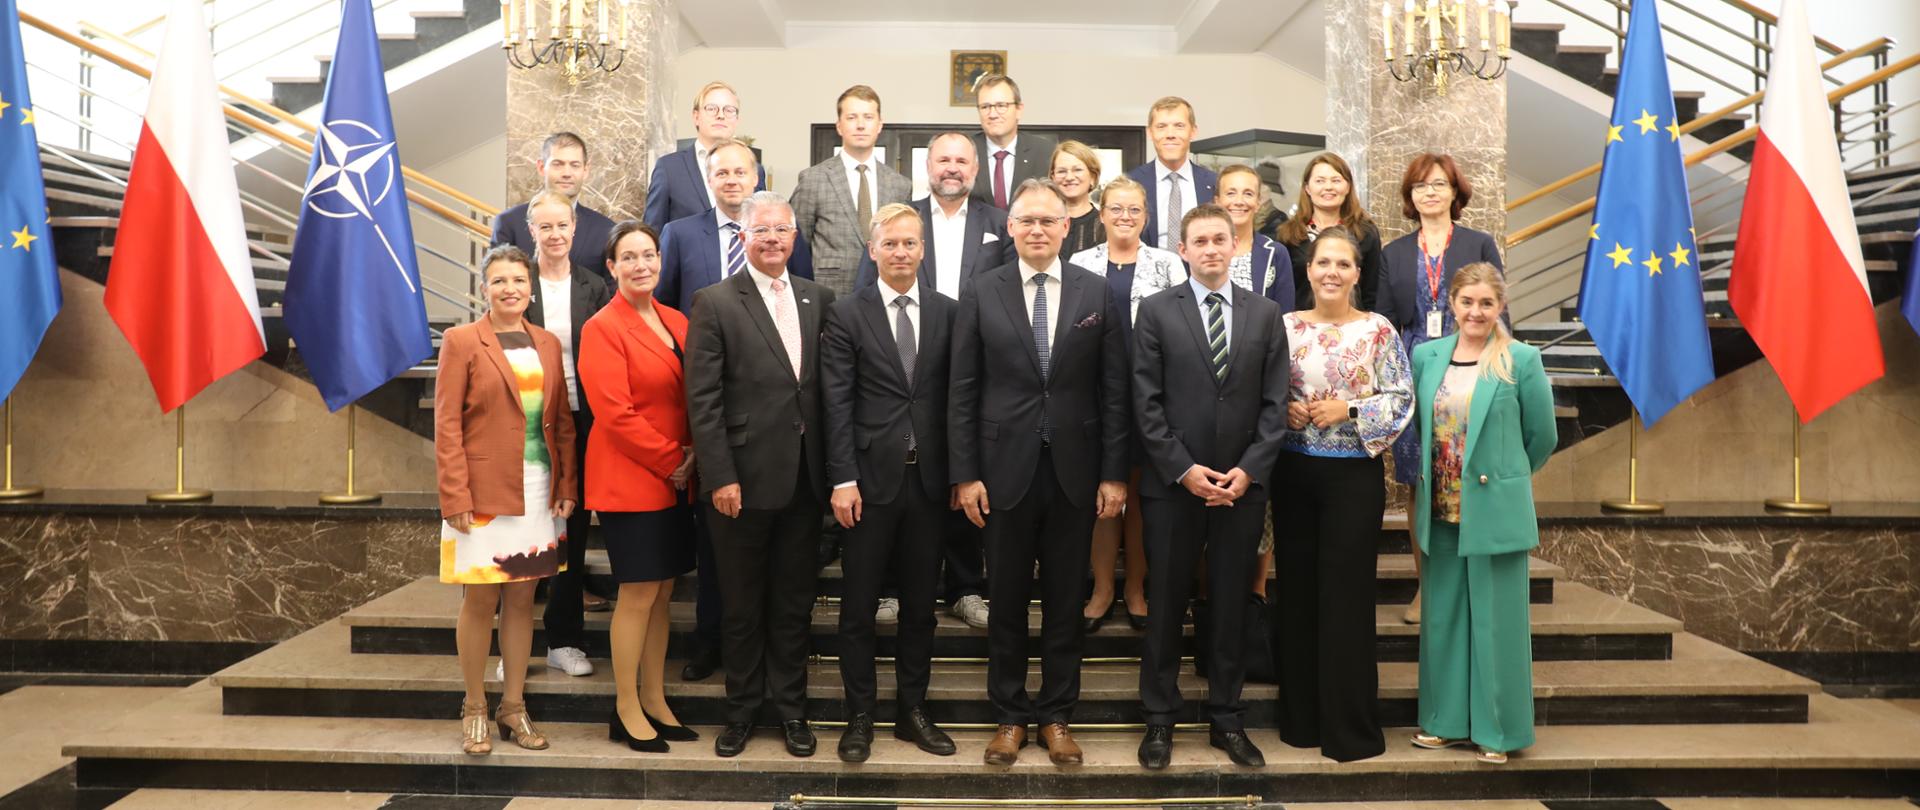 Spotkanie Sekretarza Stanu Arkadiusz Mularczyka z nordycką grupą parlamentarną